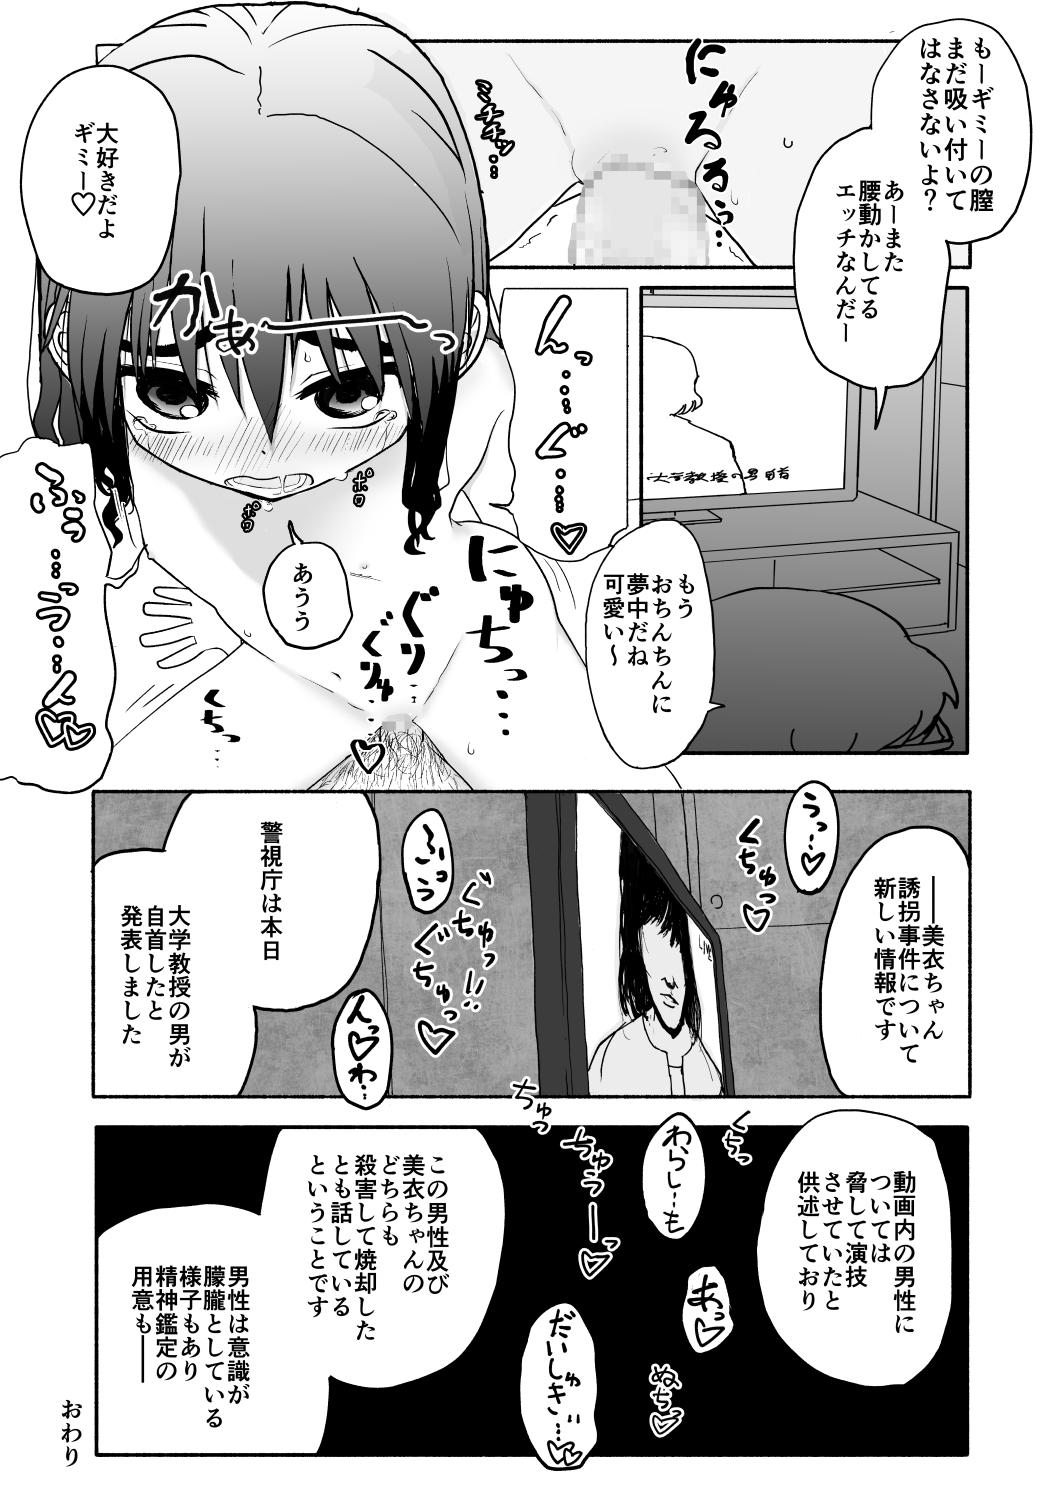 Whatsapp Okasi Tsukuri Idol ☆ Gimi ! Kankin choukyo manga Novinho - Page 63